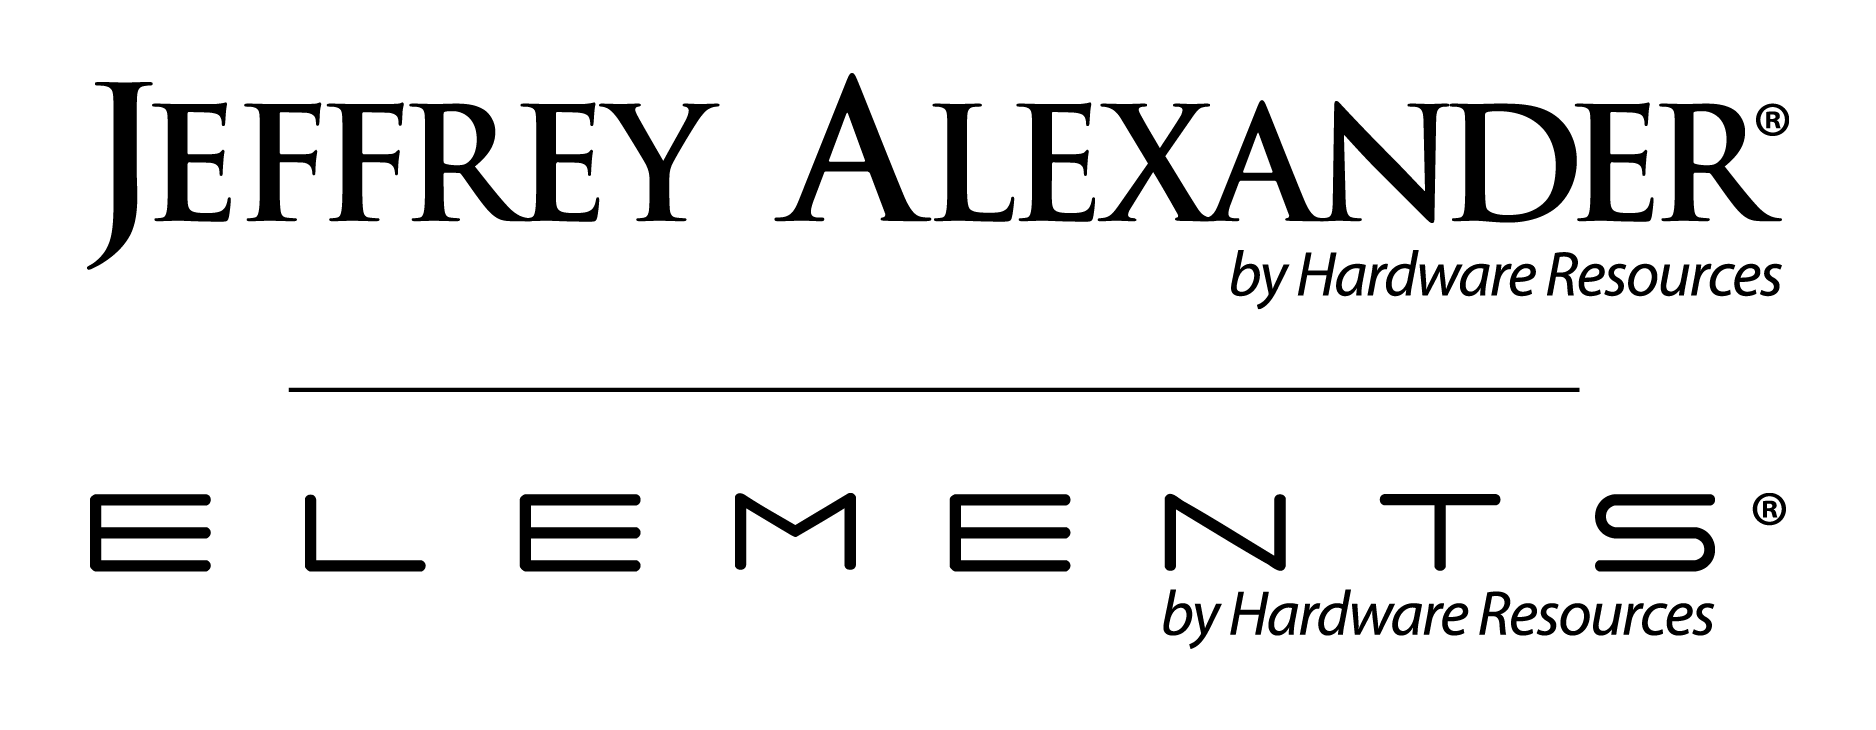 Jeffrey Alexander and Elements Logo